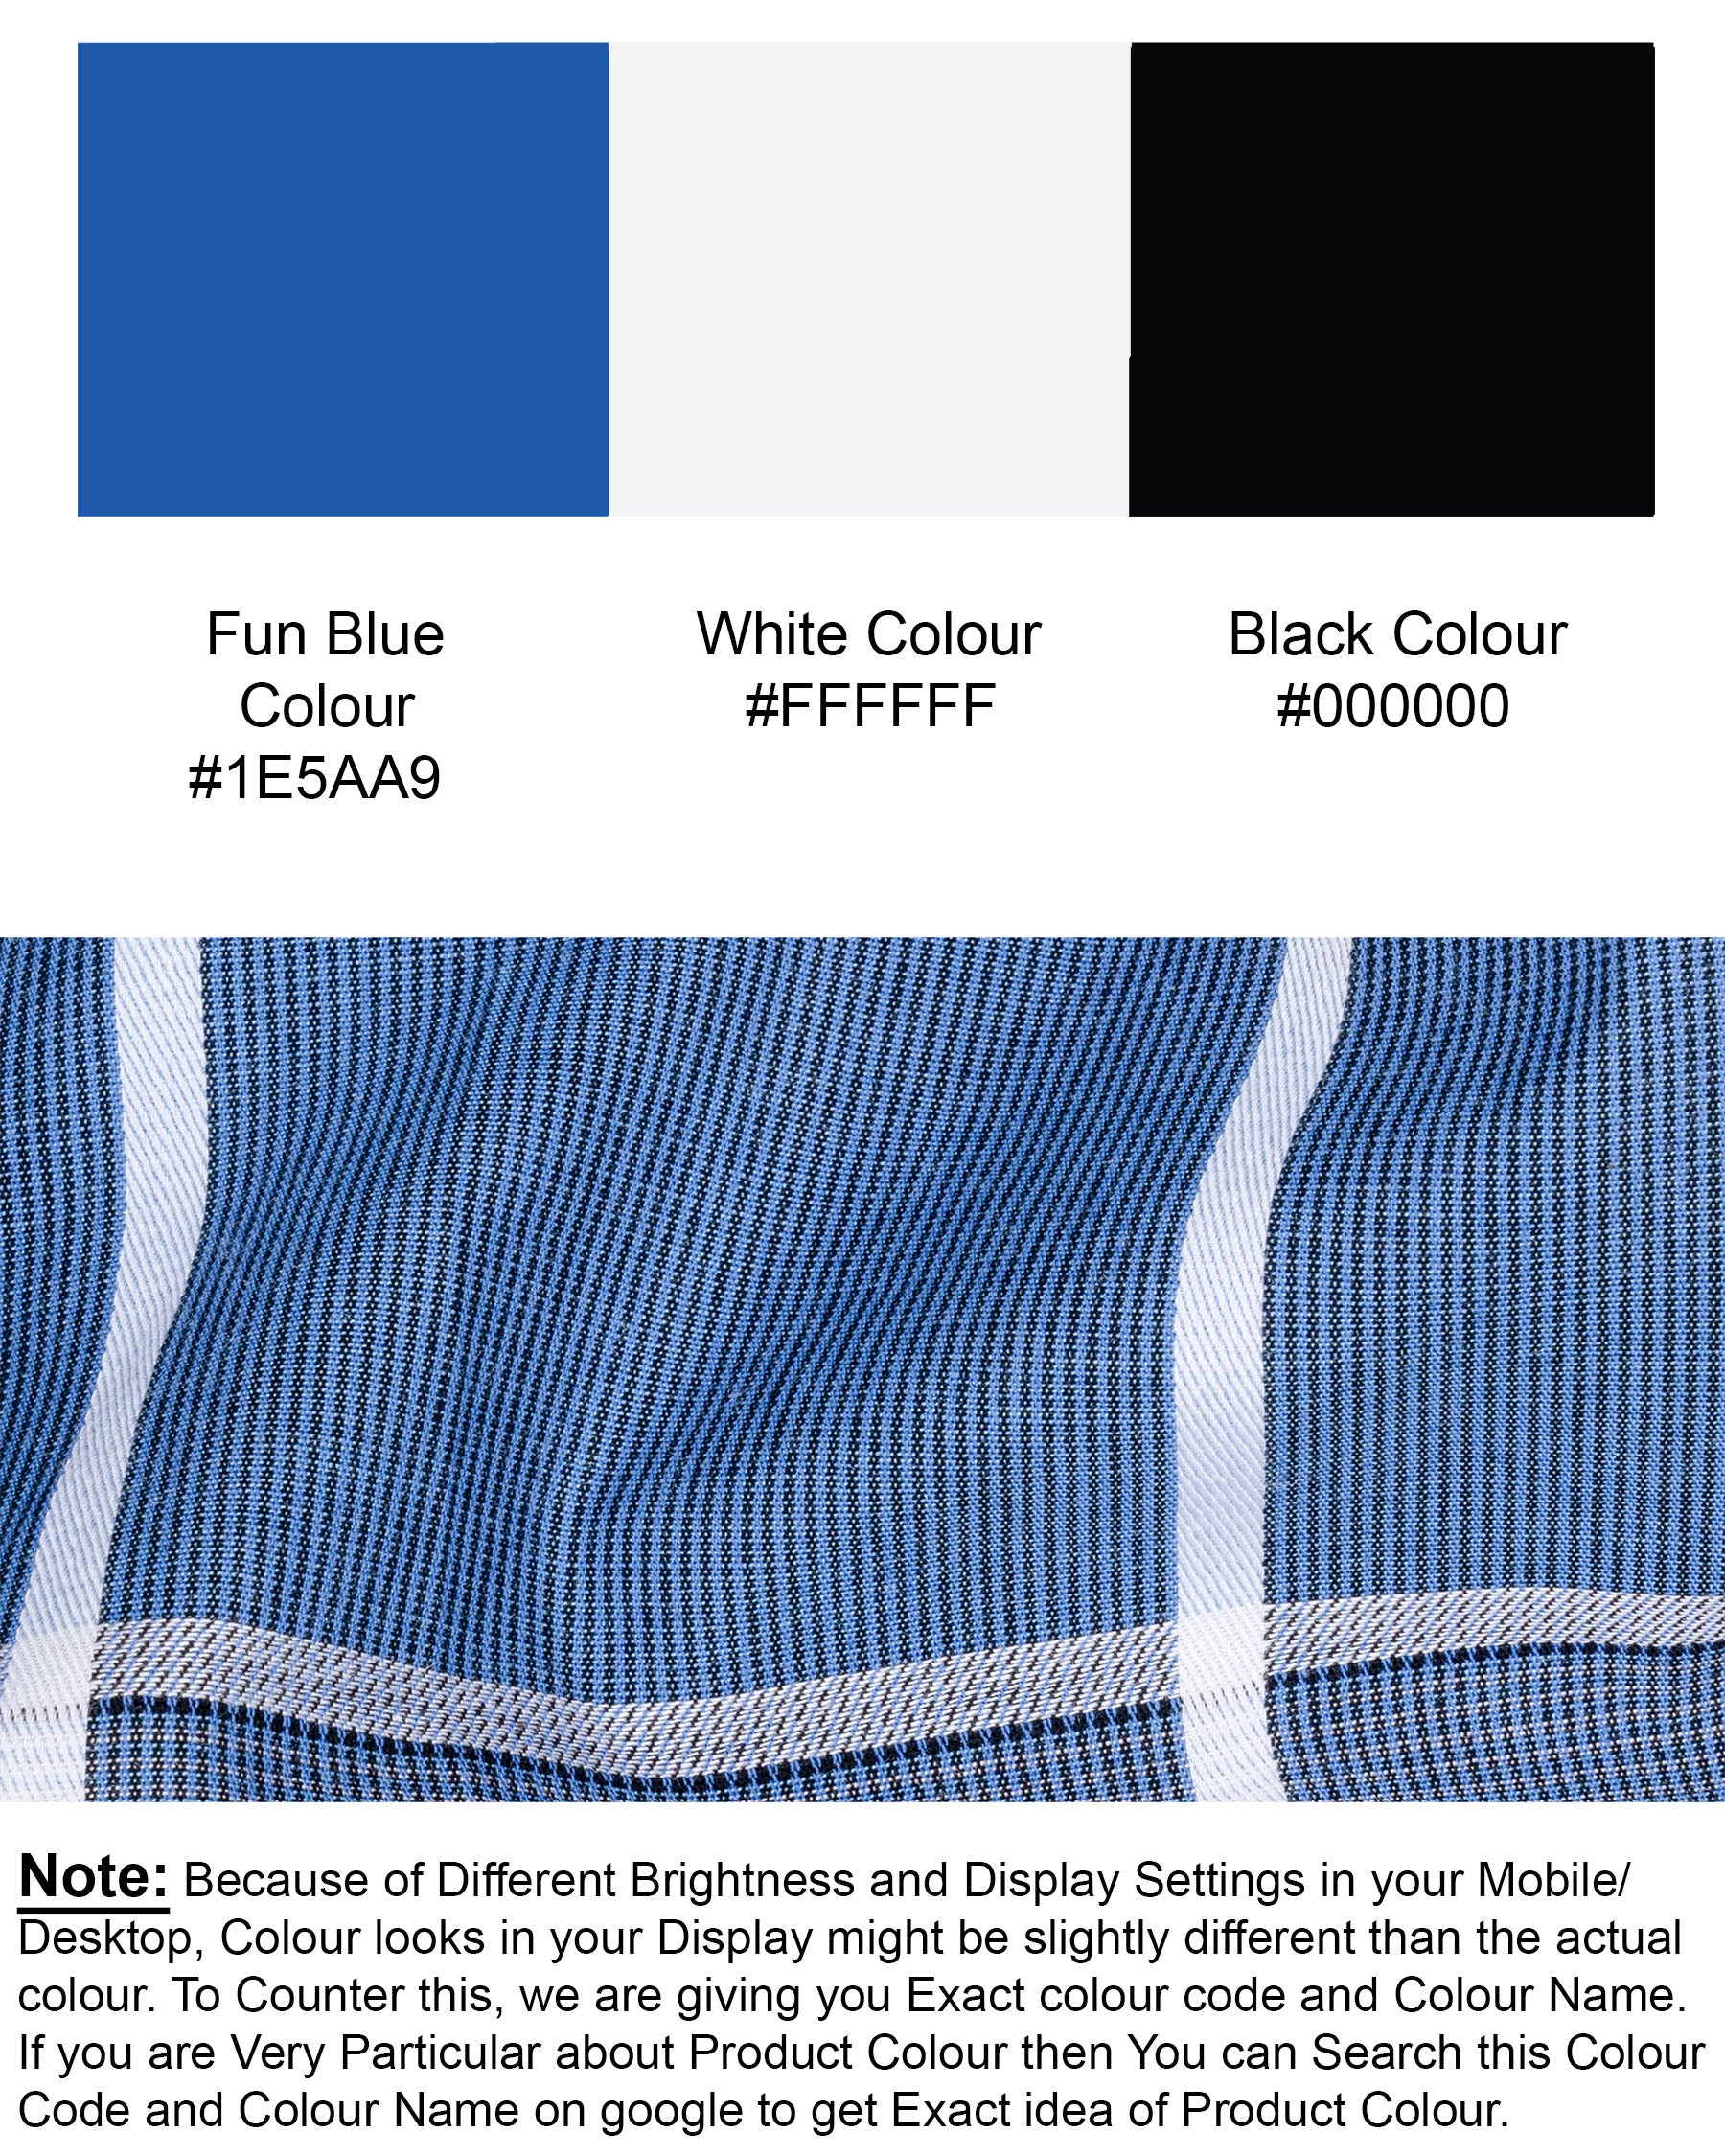 Fun Blue and White Windowpane Premium Cotton Shirt 6687-M-38,6687-M-38,6687-M-39,6687-M-39,6687-M-40,6687-M-40,6687-M-42,6687-M-42,6687-M-44,6687-M-44,6687-M-46,6687-M-46,6687-M-48,6687-M-48,6687-M-50,6687-M-50,6687-M-52,6687-M-52 